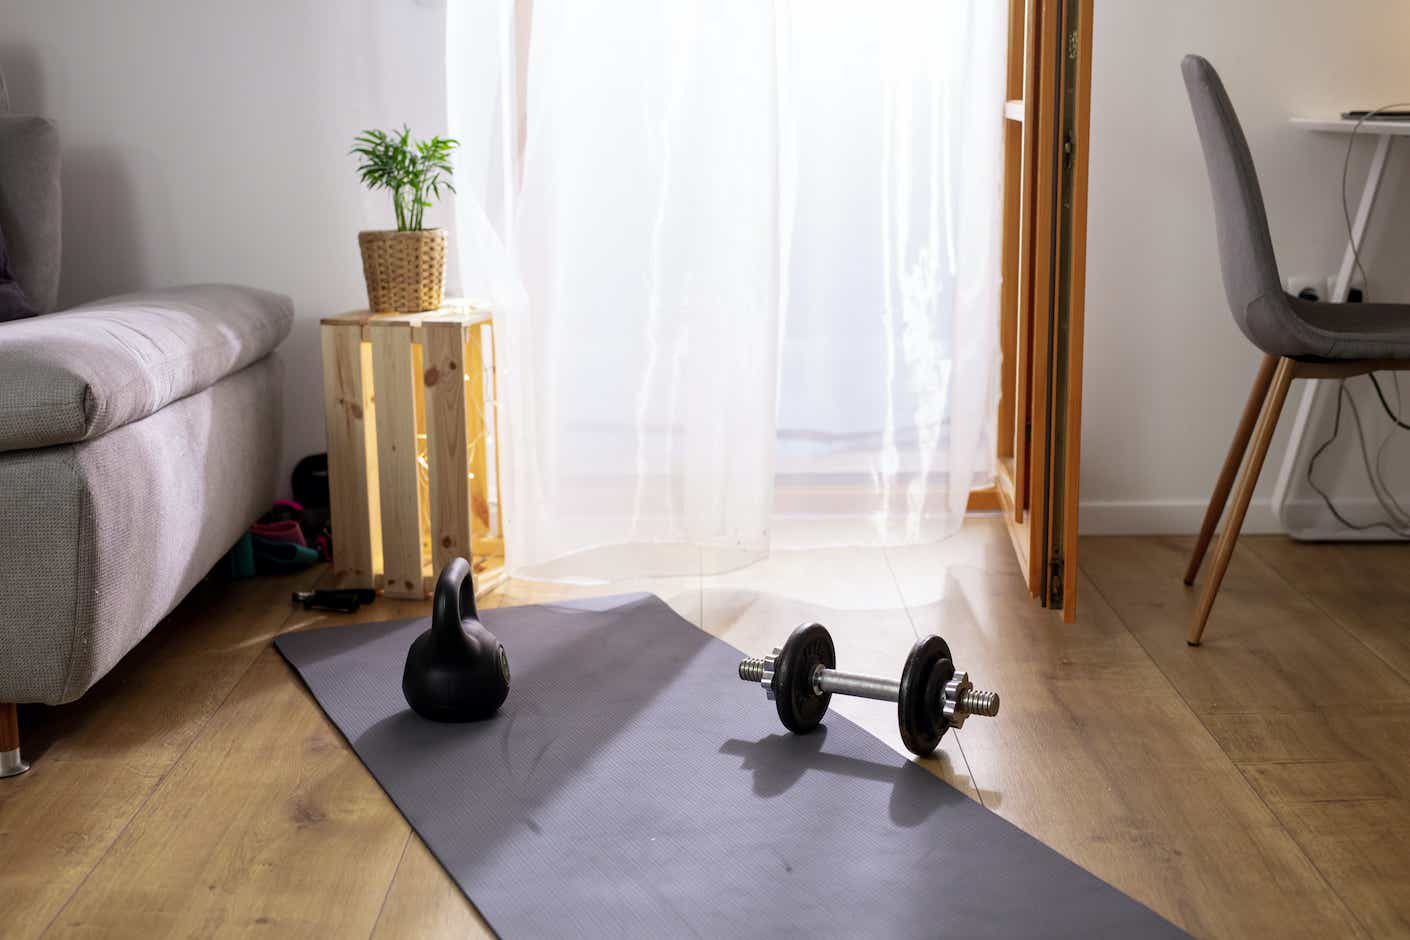 Exercise equipment on yoga mat in living room